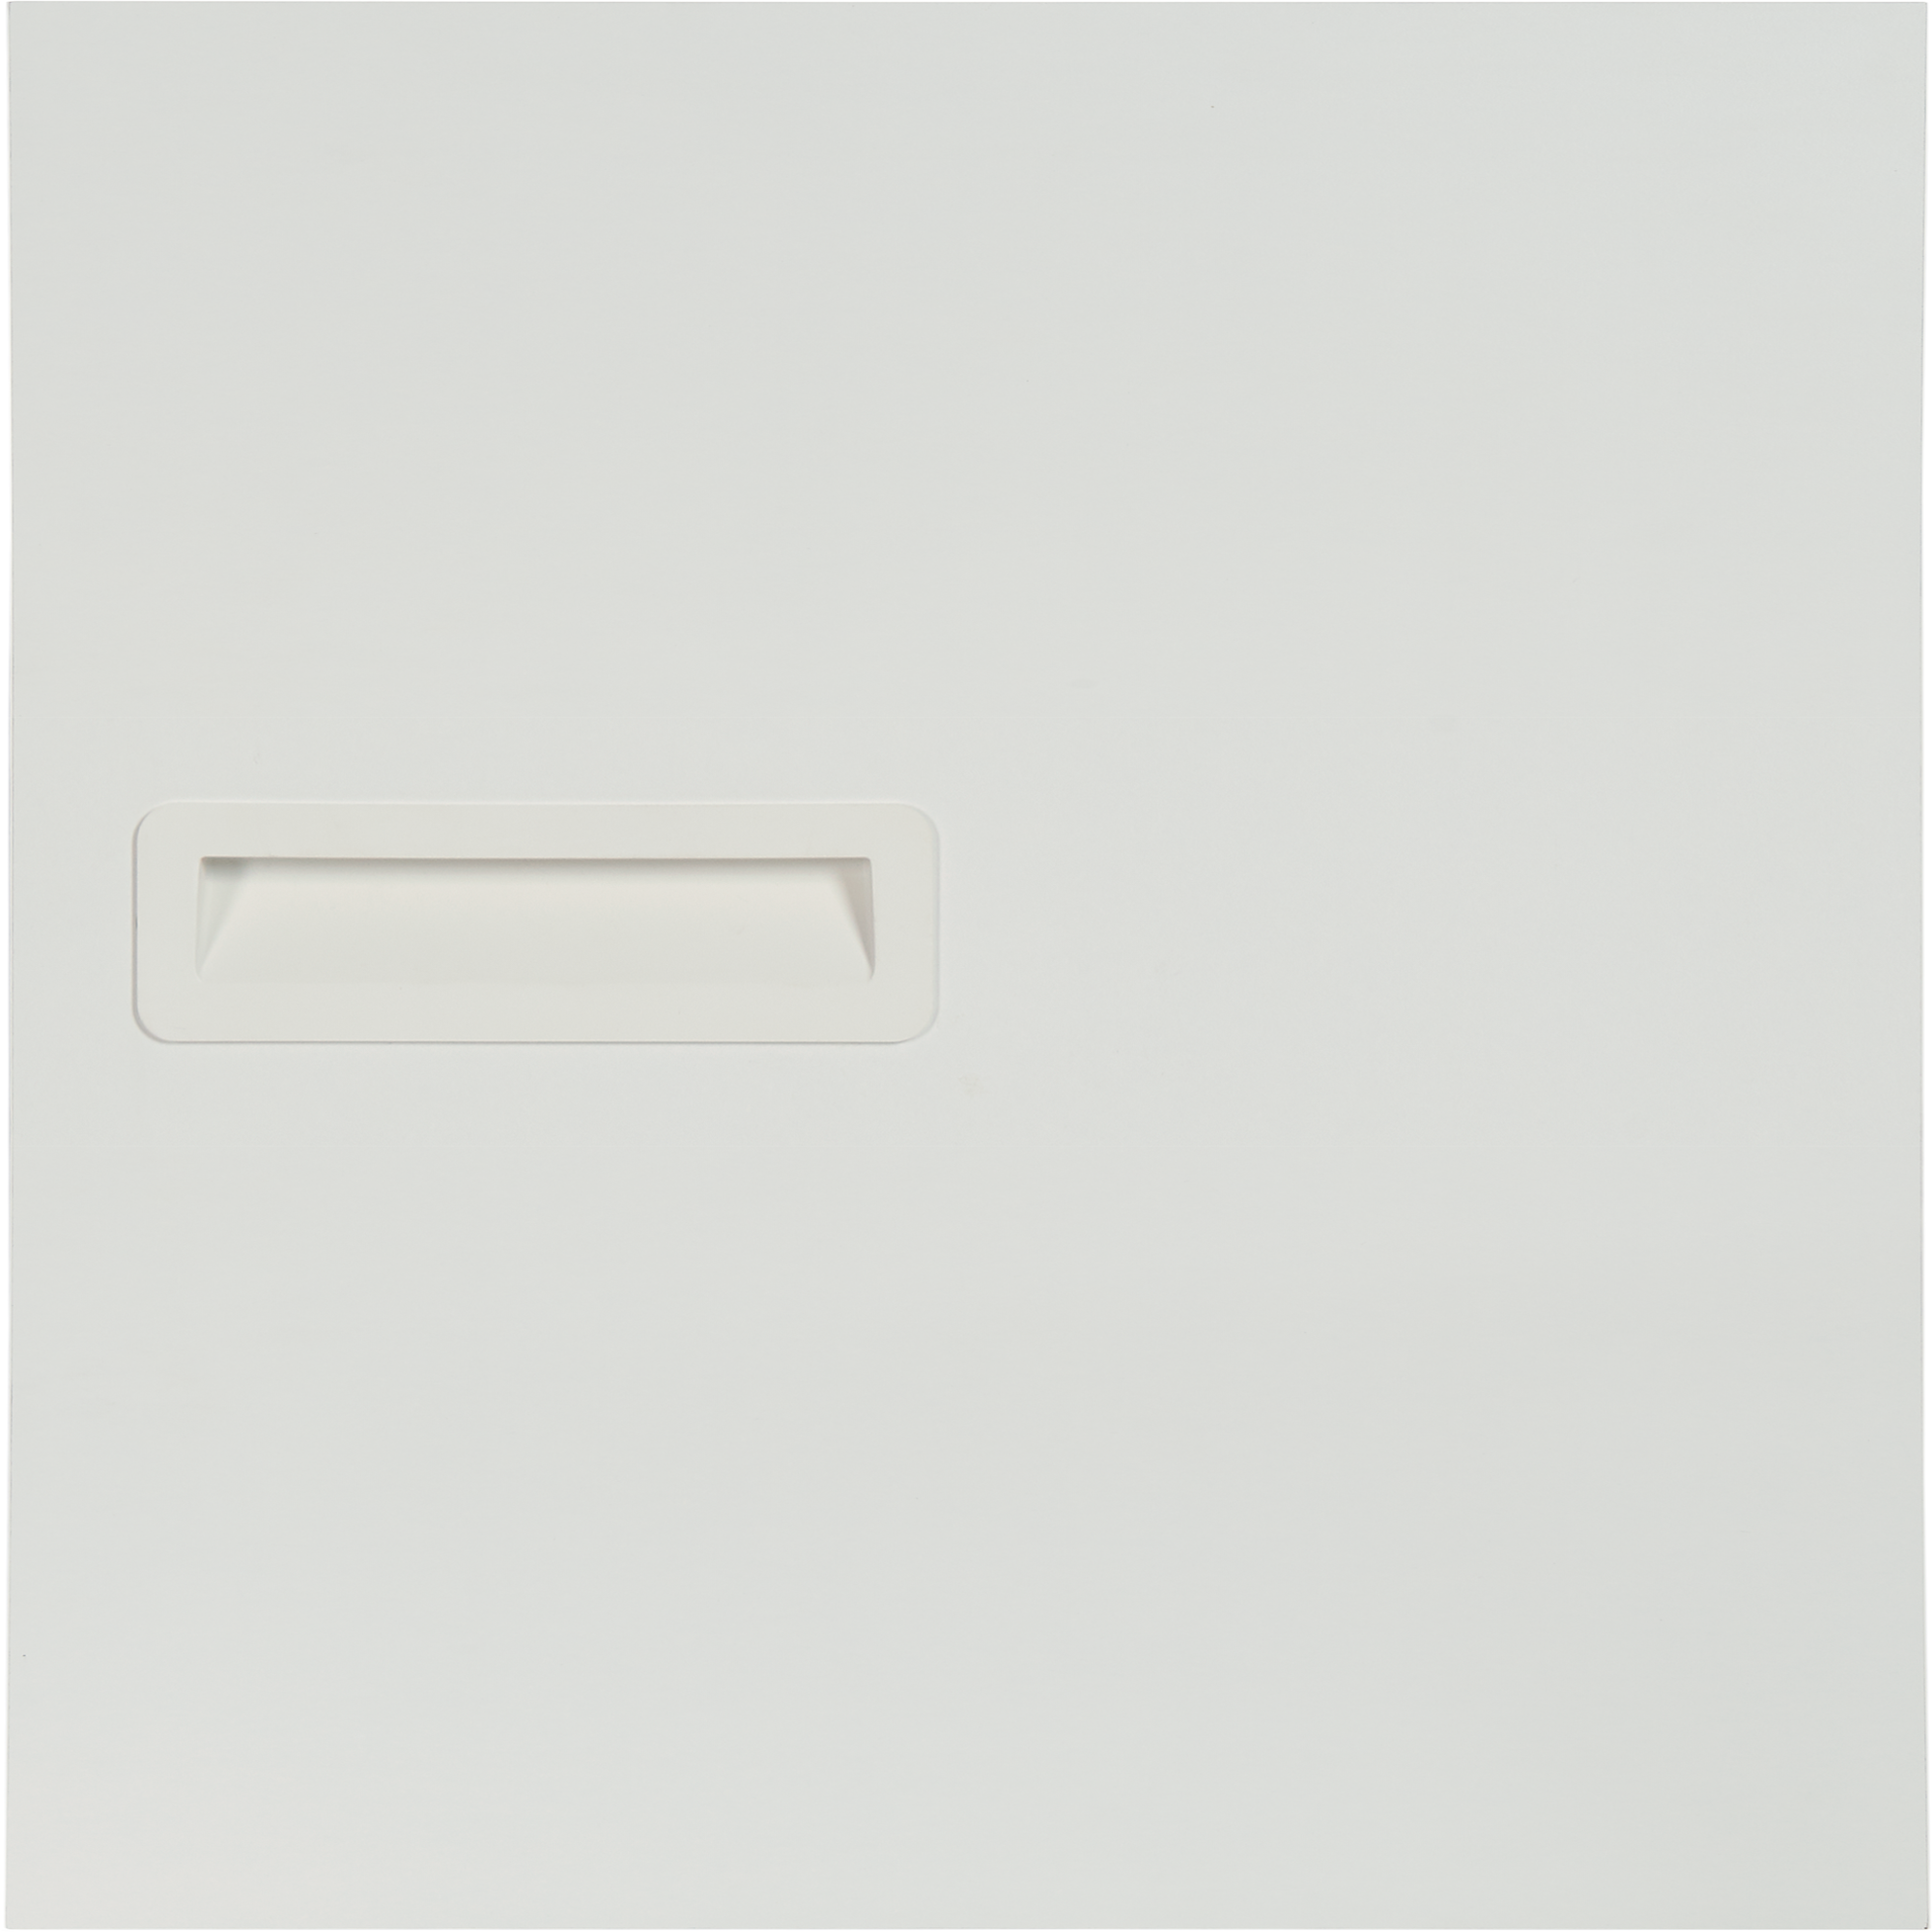 Puerta abatible para armario tokyo blanco 40x40x1,6 cm